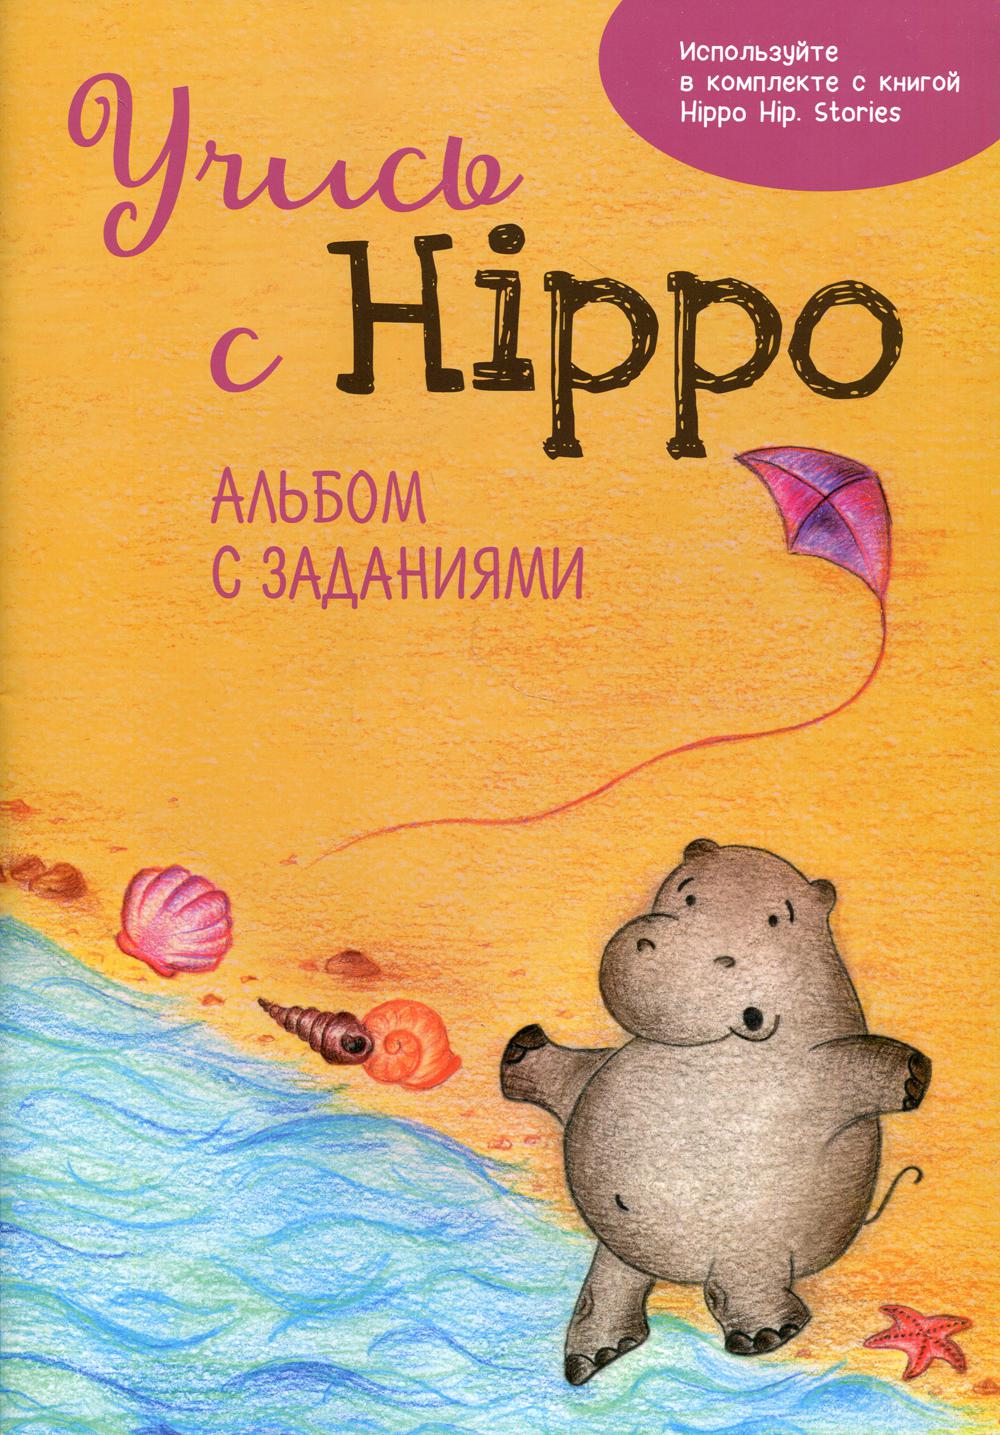   Hippo!   